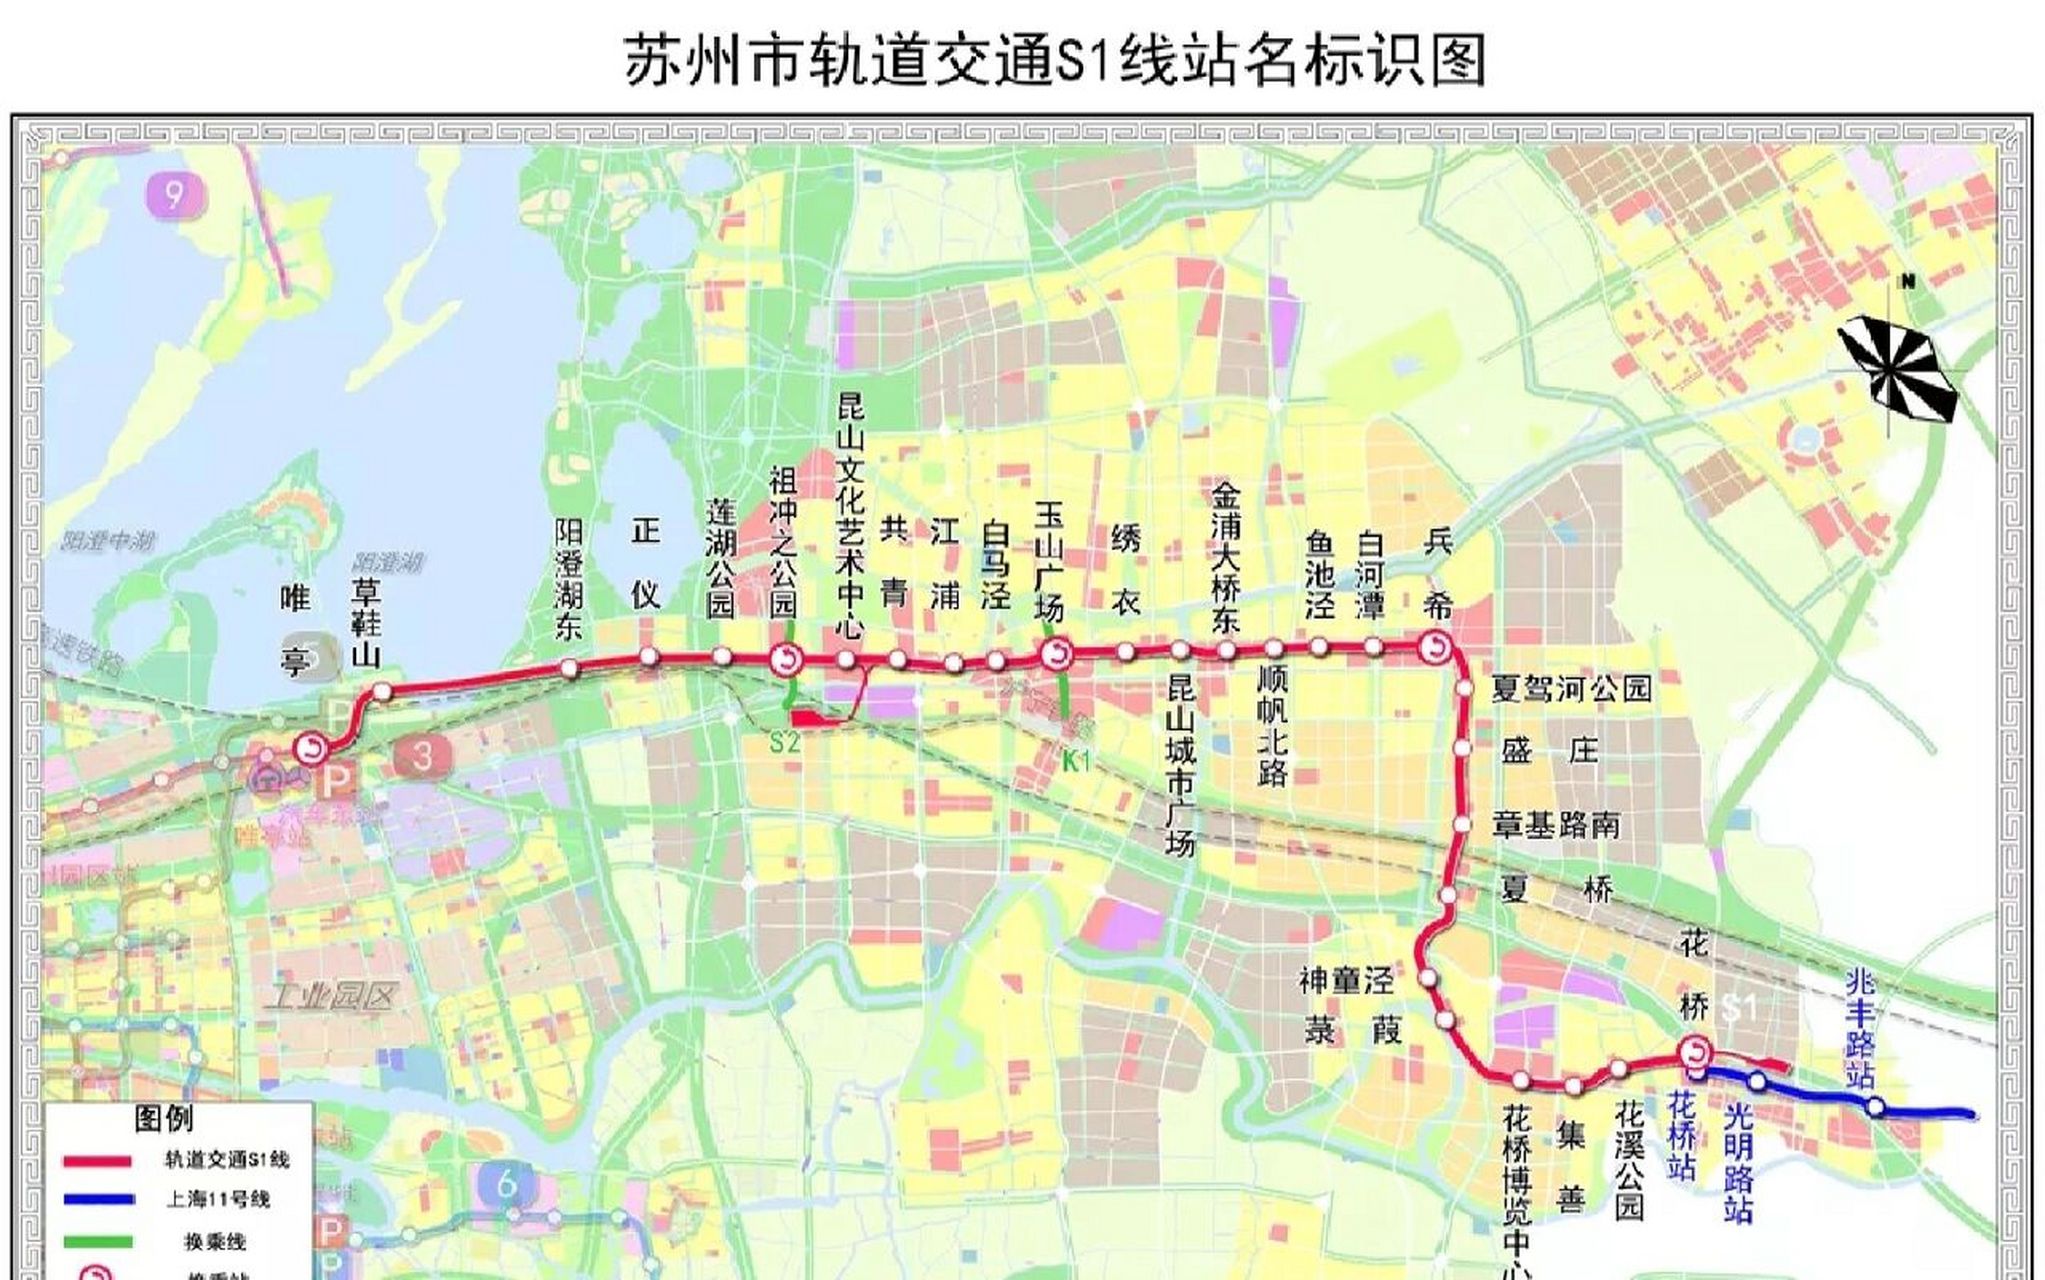 苏州s1通车后,上海市民坐地铁去昆山苏州! 苏州s1线长41